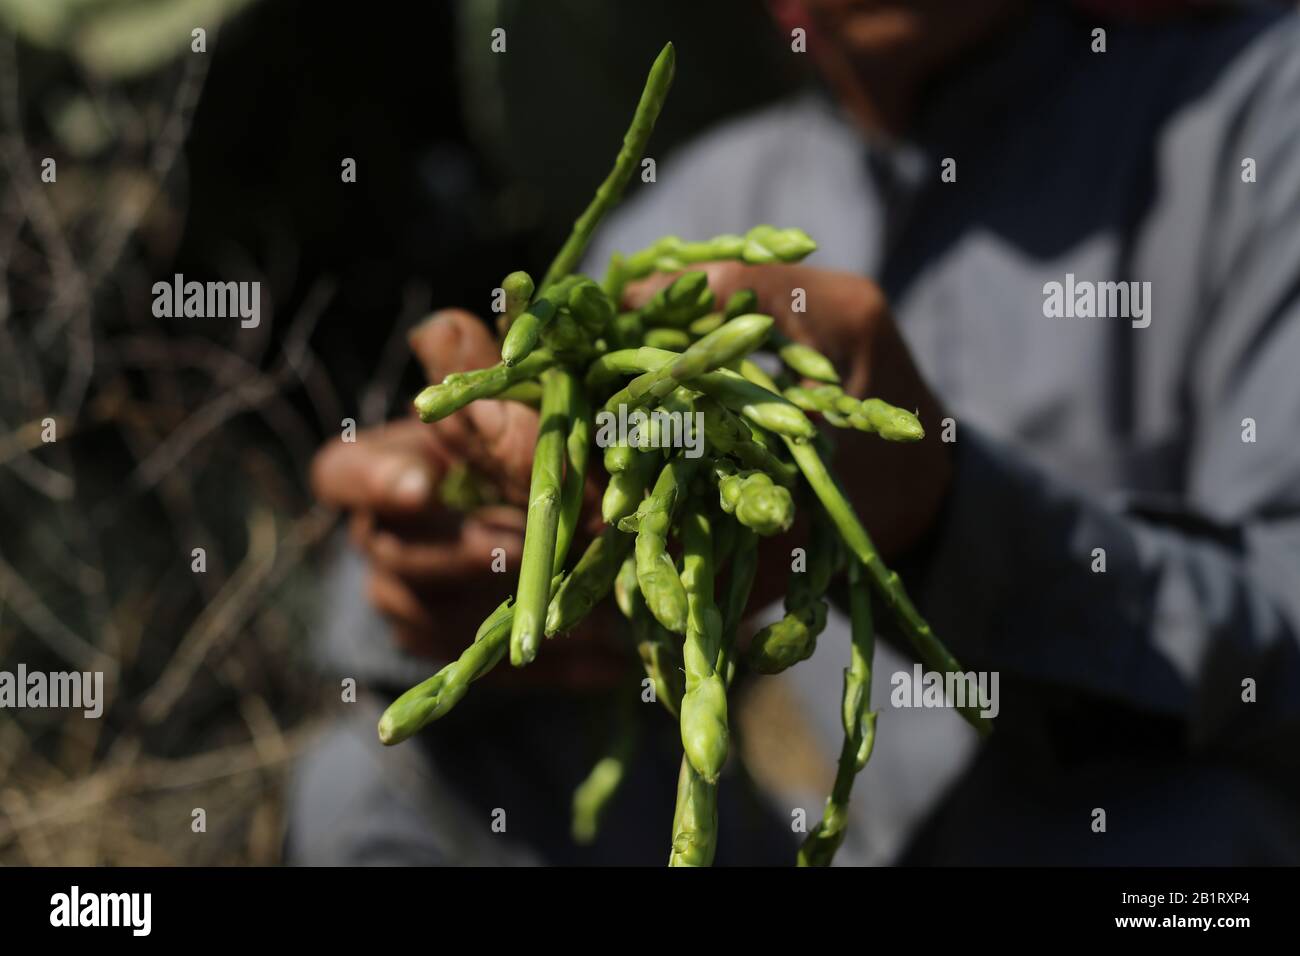 Gaza. 27th Feb, 2020. Il 27 febbraio 2020, il contadino palestinese Suleiman Qudaih mostra gli asparagi selvatici raccolti nella sua fattoria a est della città meridionale della striscia di Gaza di Khan Younis. Qudaih ha detto che gli asparagi selvatici possono essere trovati tra le erbe alte e le piante a lunga vita come il cactus. L'uomo, 73, cuoce gli asparagi con uova e altri piatti per assorbire il suo nutrimento. Credito: Khaled Omar/Xinhua/Alamy Live News Foto Stock